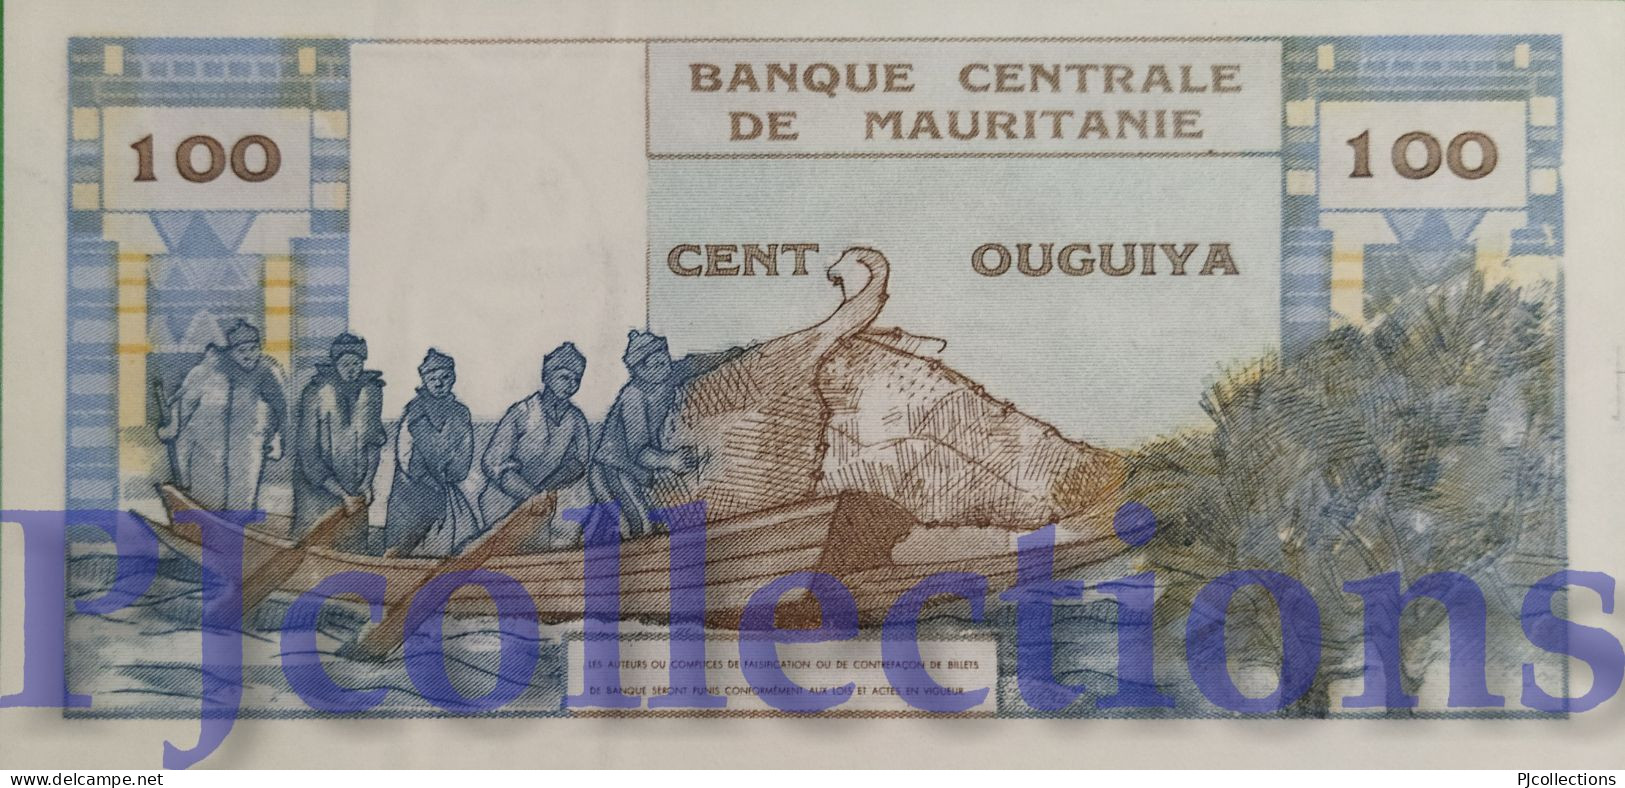 MAURITANIA 100 OUGUIYA 1973 PICK 1a UNC - Mauritanien